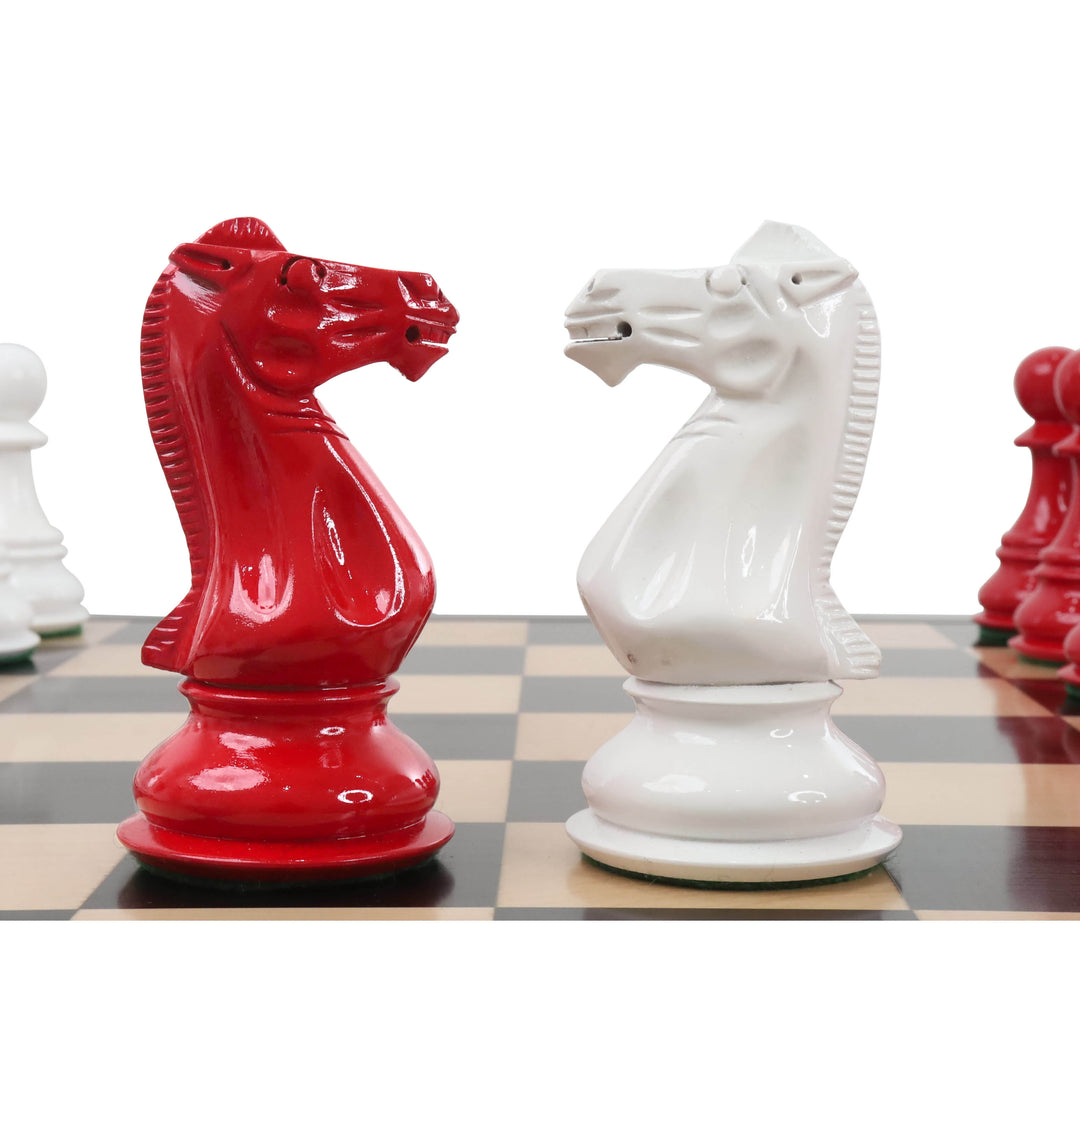 6,3" Jumbo Pro Staunton Luxus-Schachspiel - Nur Schachfiguren - rot & weiß lackiert